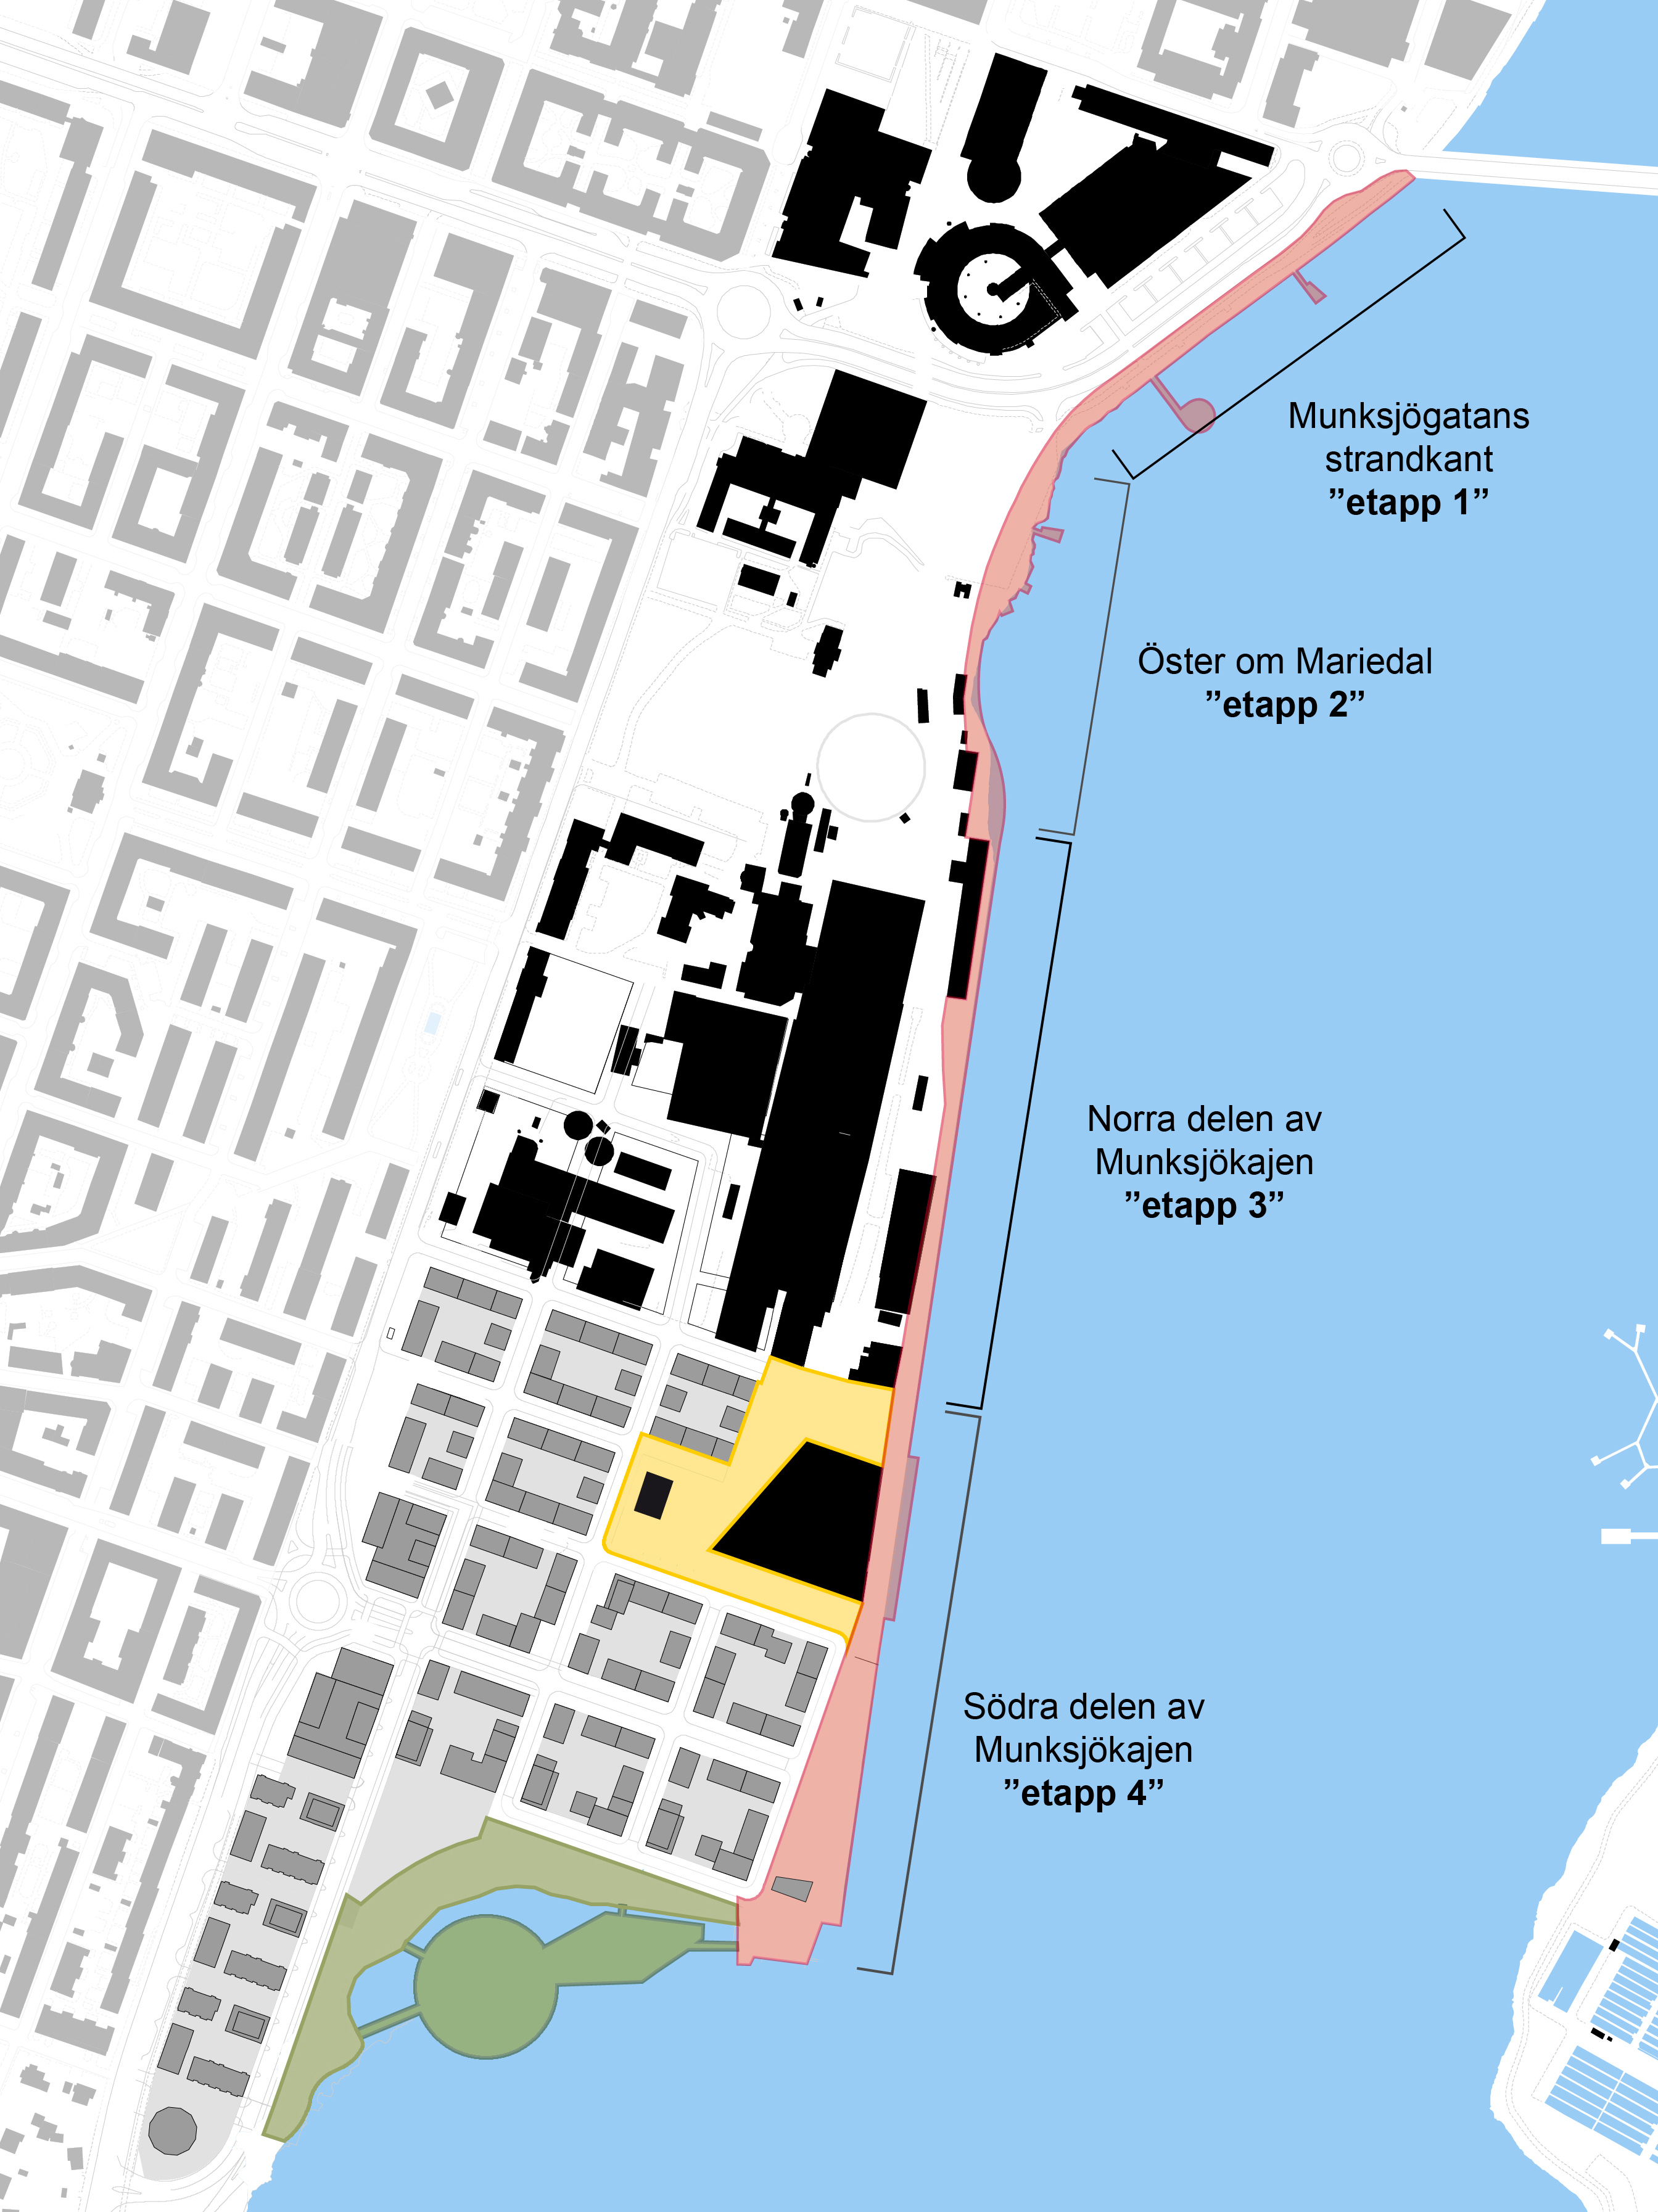 Illustrerad karta med den långsmala kajsträckan utmarkerad längs med Munksjön. Kajen består av fyra delar. Från norr kallas de: "Munksjögatans strandkant - etapp 1", "Öster om Mariedal - etapp 2", "Norra delen av Munksjökajen - etapp 3", "Södra delen av Munksjökajen - etapp 4". 